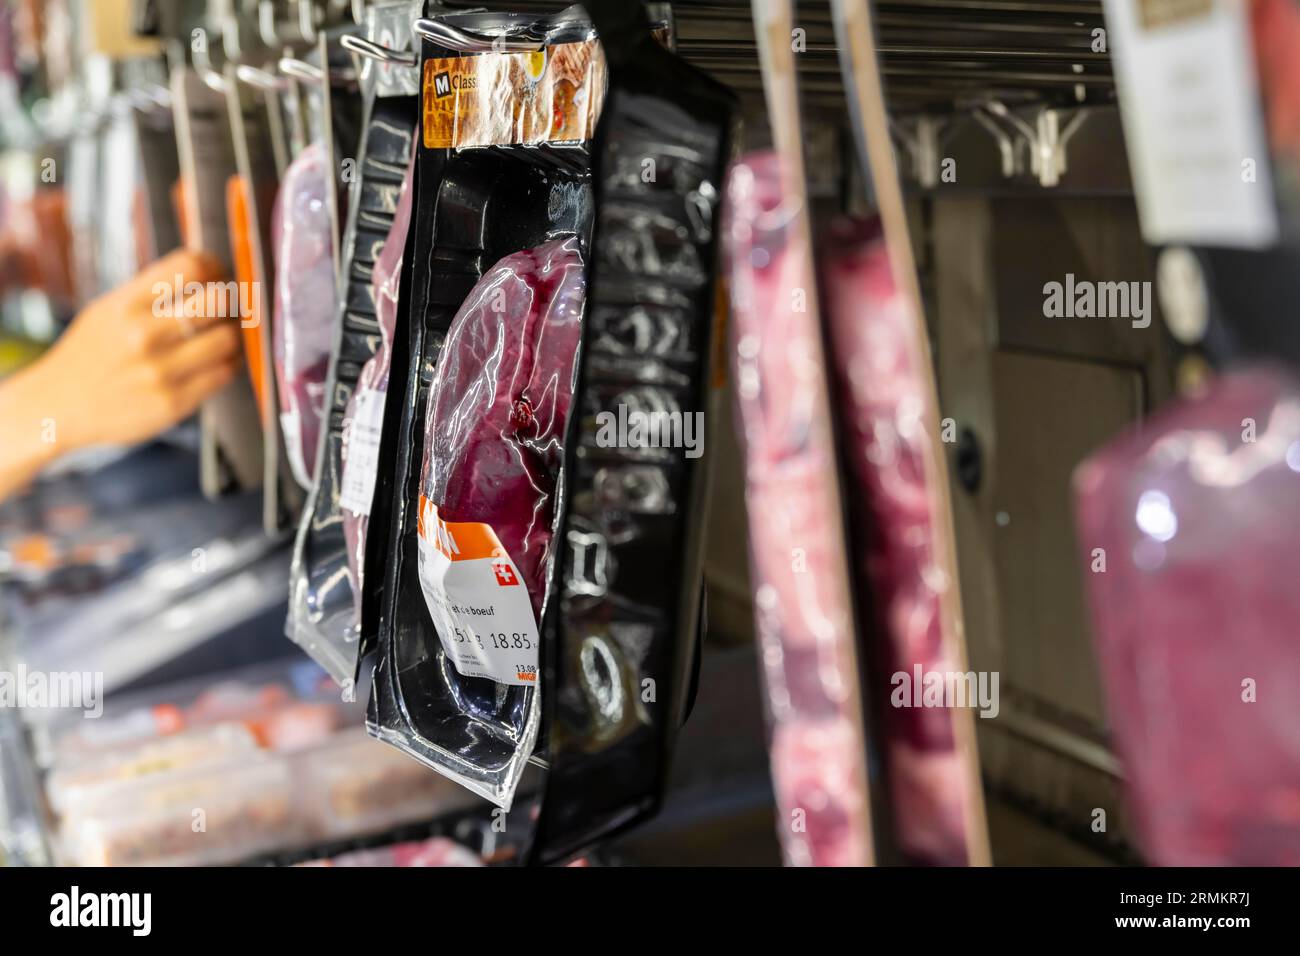 Bancone carne, manzo confezionato in pellicola termoretraibile, supermercato alimentare, Svizzera Foto Stock